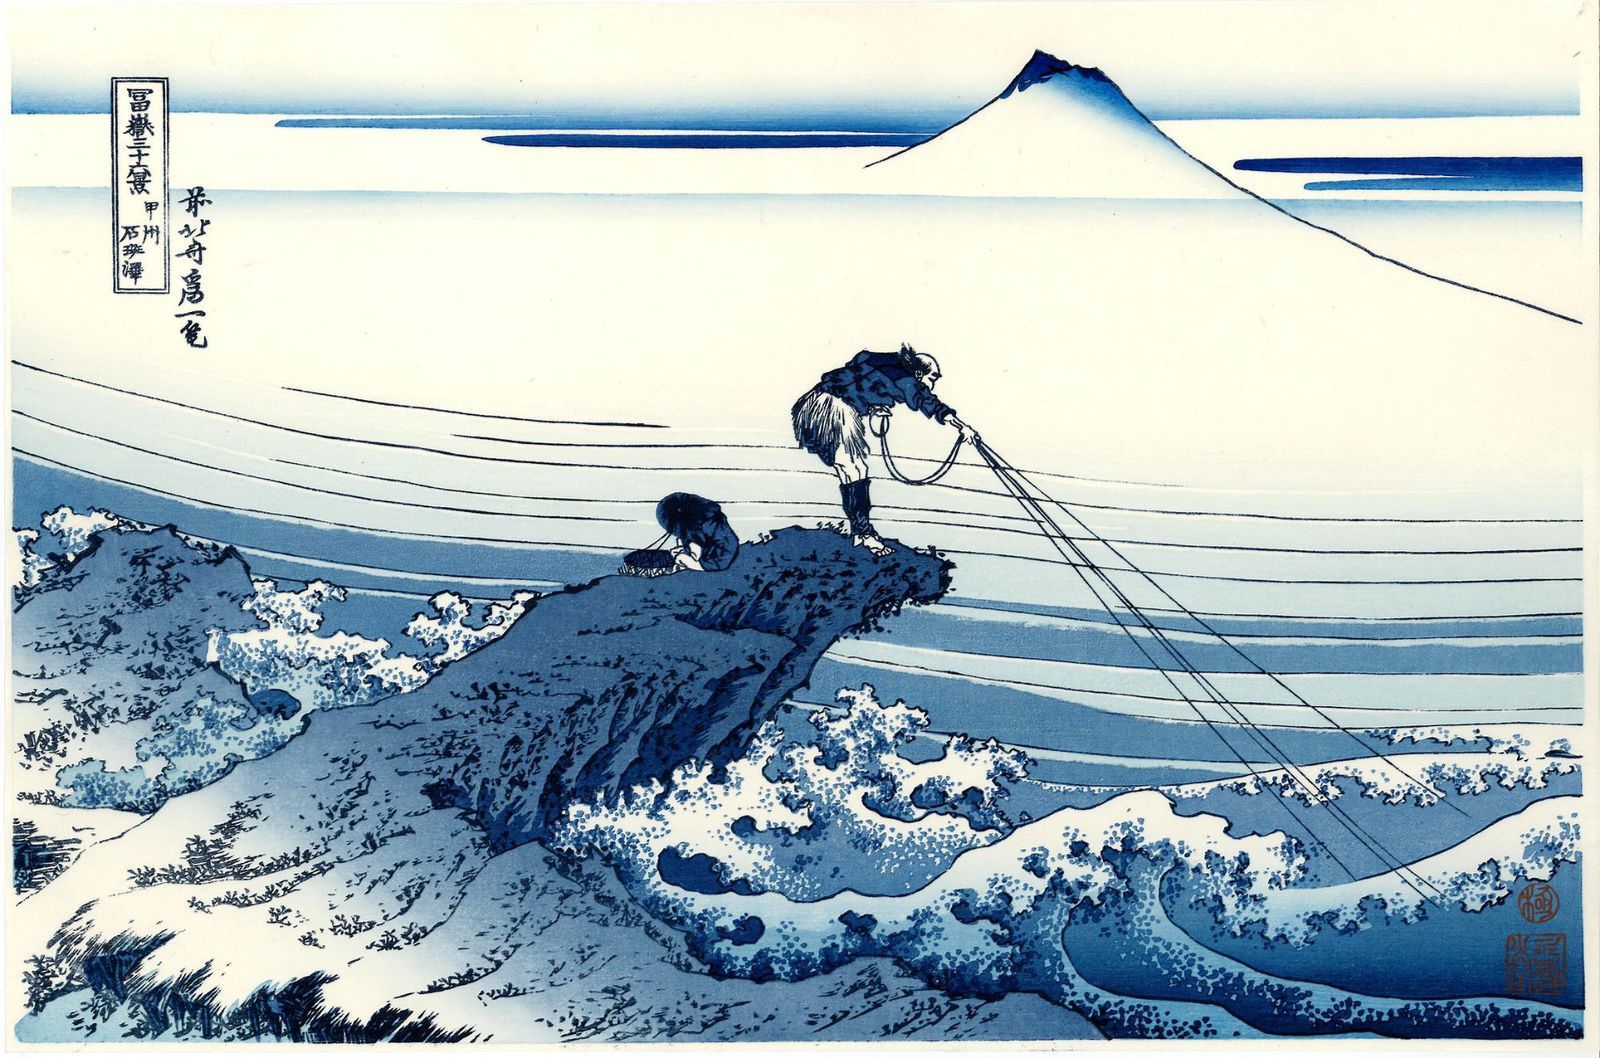 Vends éritable Estampe Japonaise De Hokusai Kajikazawa Dans La Province De  Kai Dit Le Pêcheur - paris-vente-veritables-estampes-objets-art-japon .overblog.com